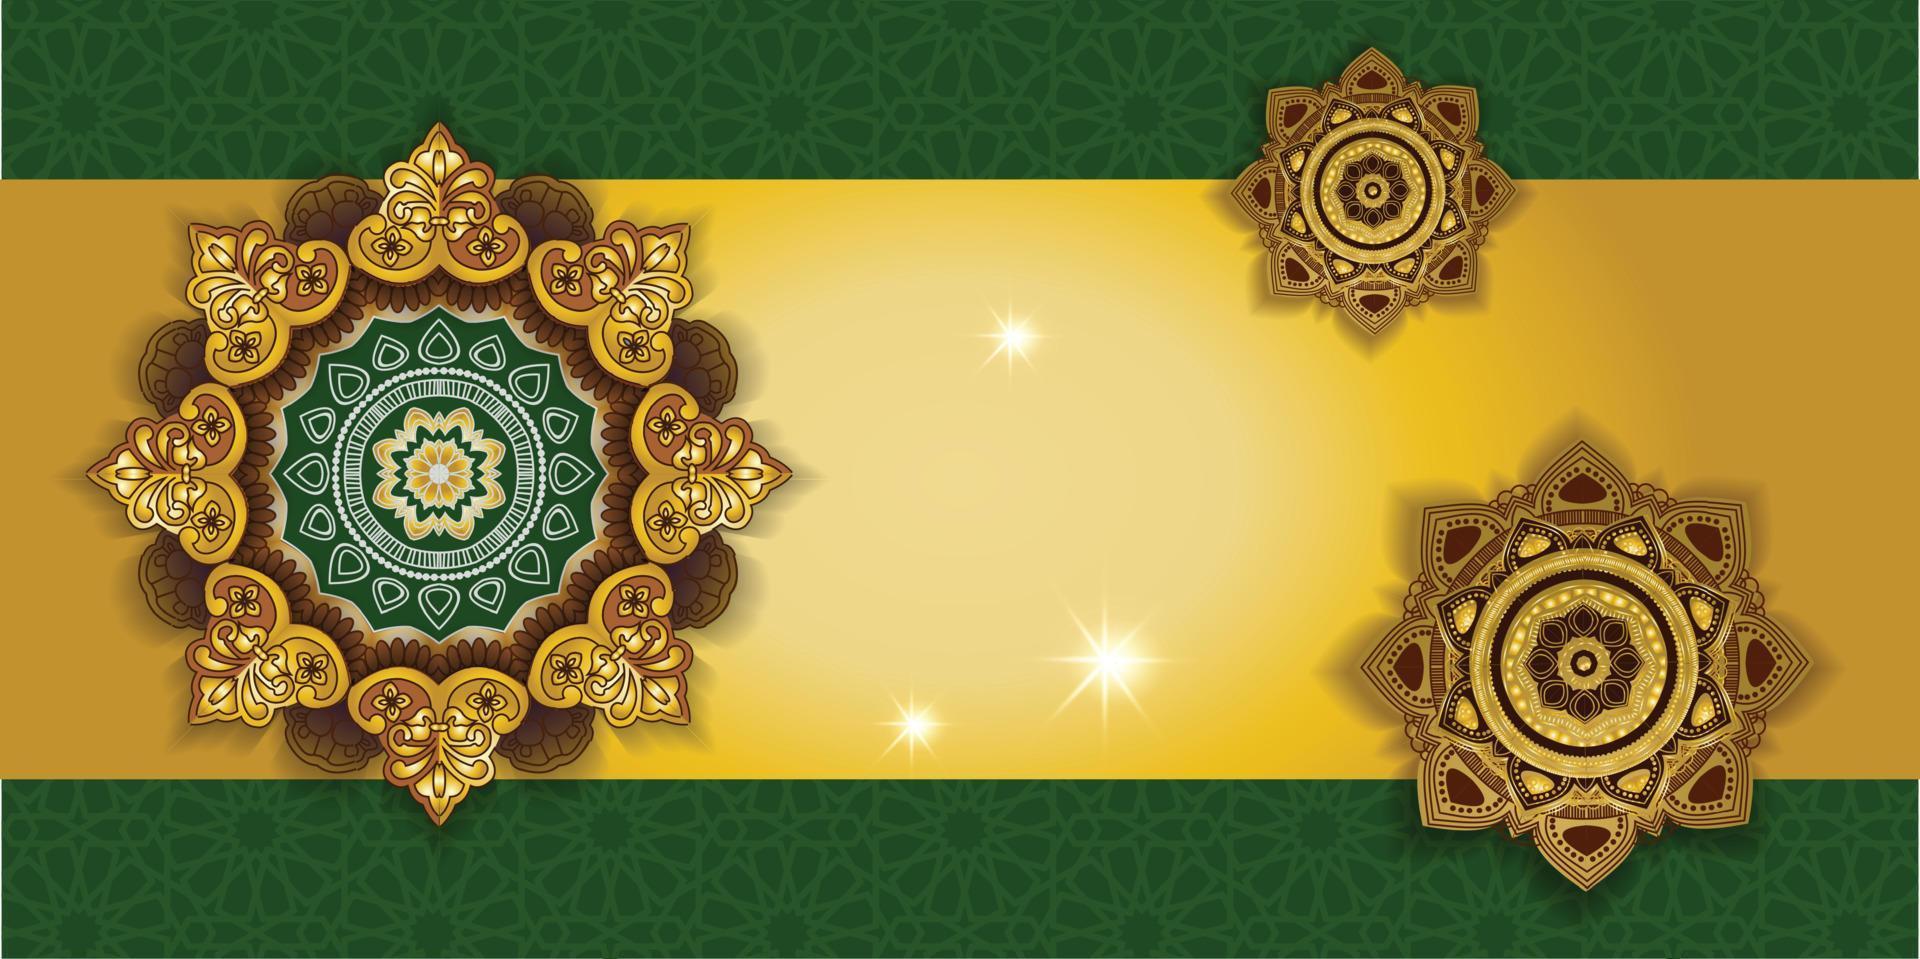 Thiết kế nền tảng mandala Hồi giáo vector đẹp mắt sẽ khiến bạn không thể rời mắt. Với sự phối hợp hài hòa giữa các hình khối và màu sắc, bức tranh sẽ mang lại cảm giác thư thái và sự yên bình.